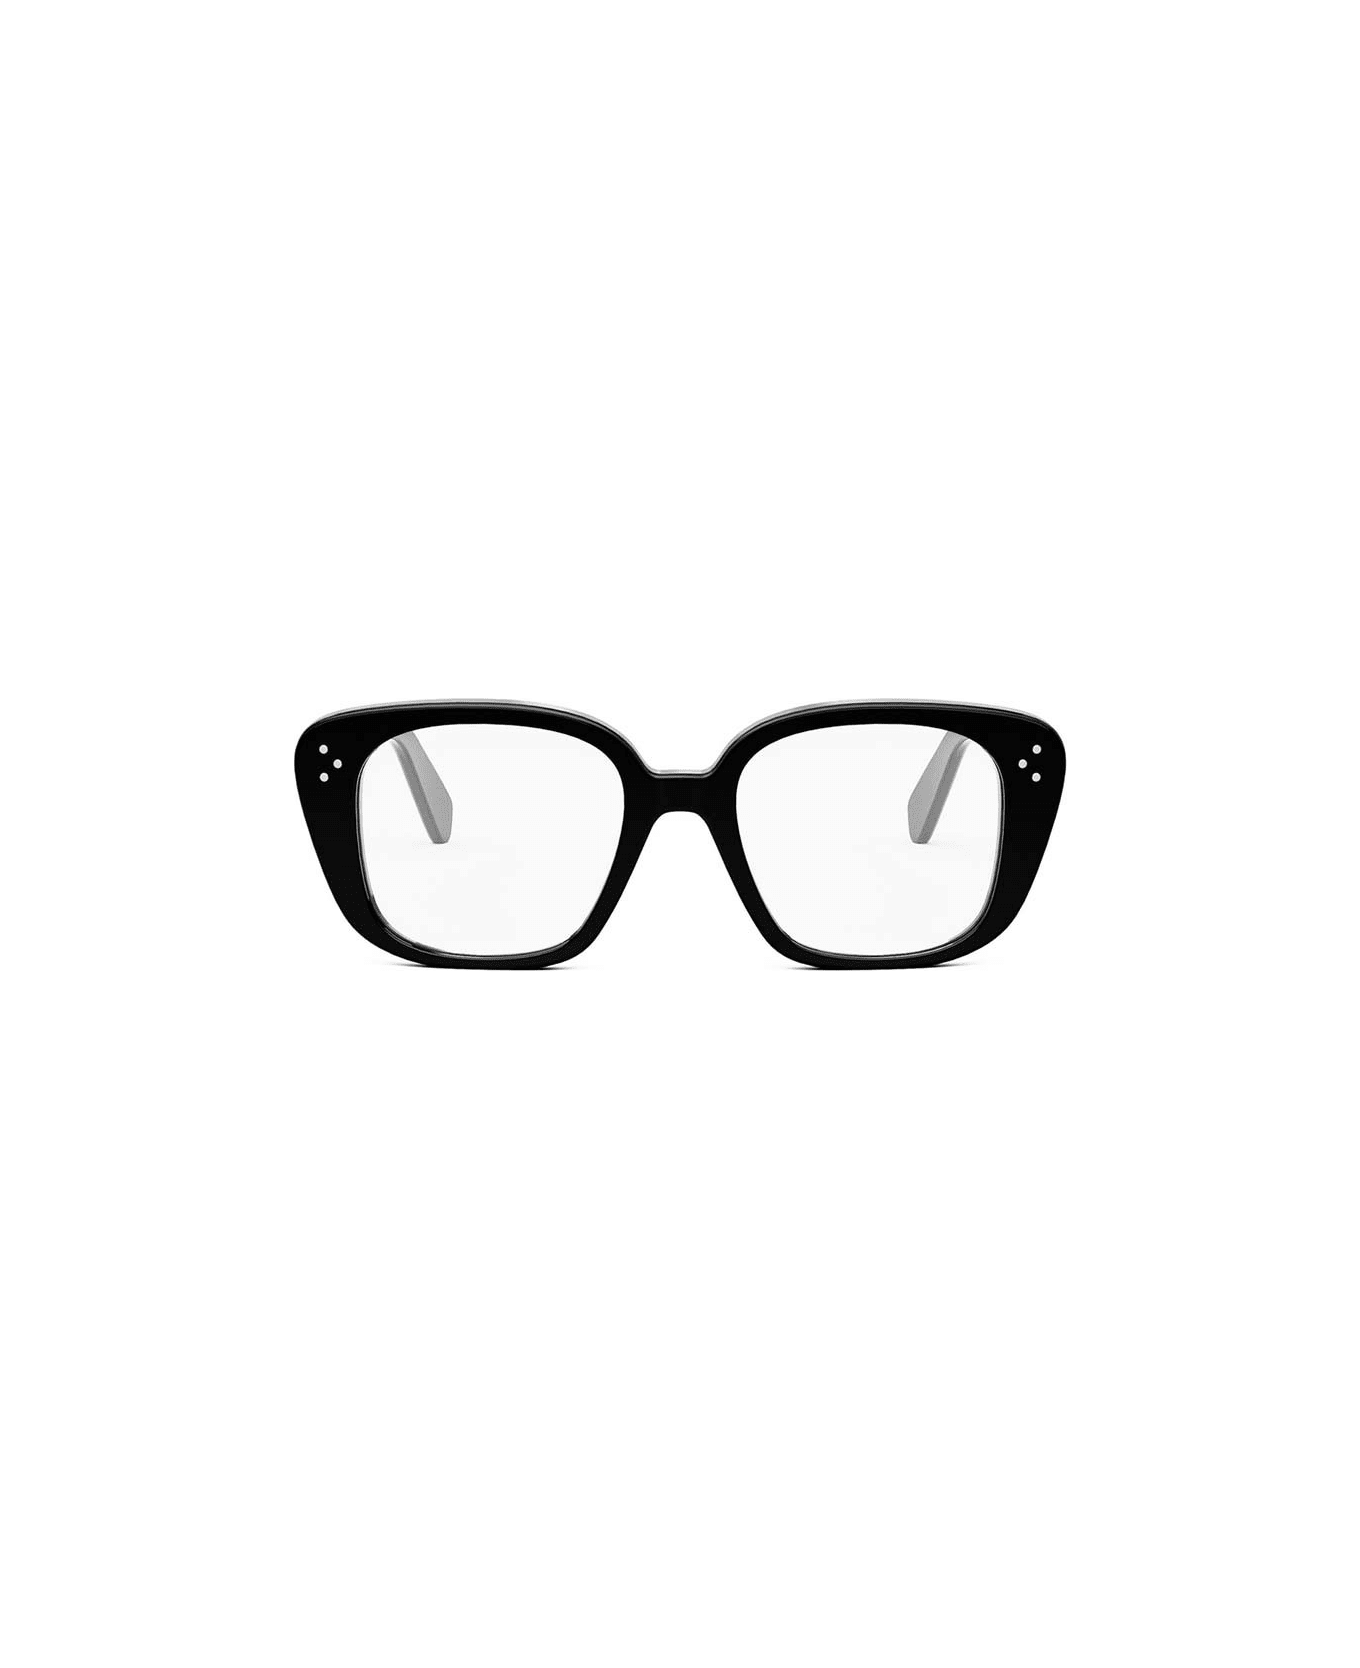 Celine Glasses - Nero アイウェア